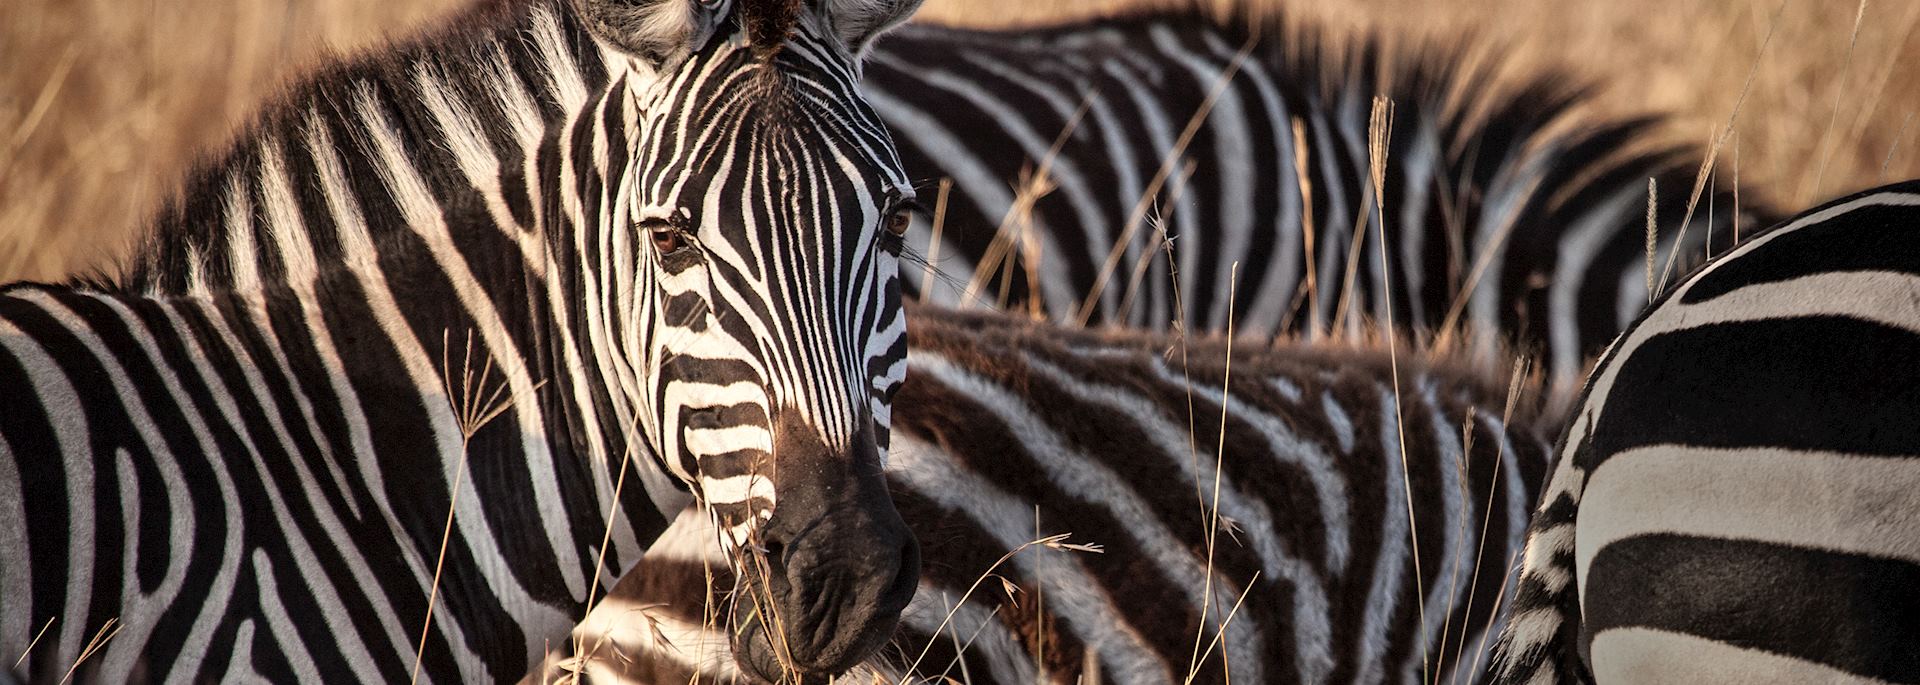 Zebra in morning light